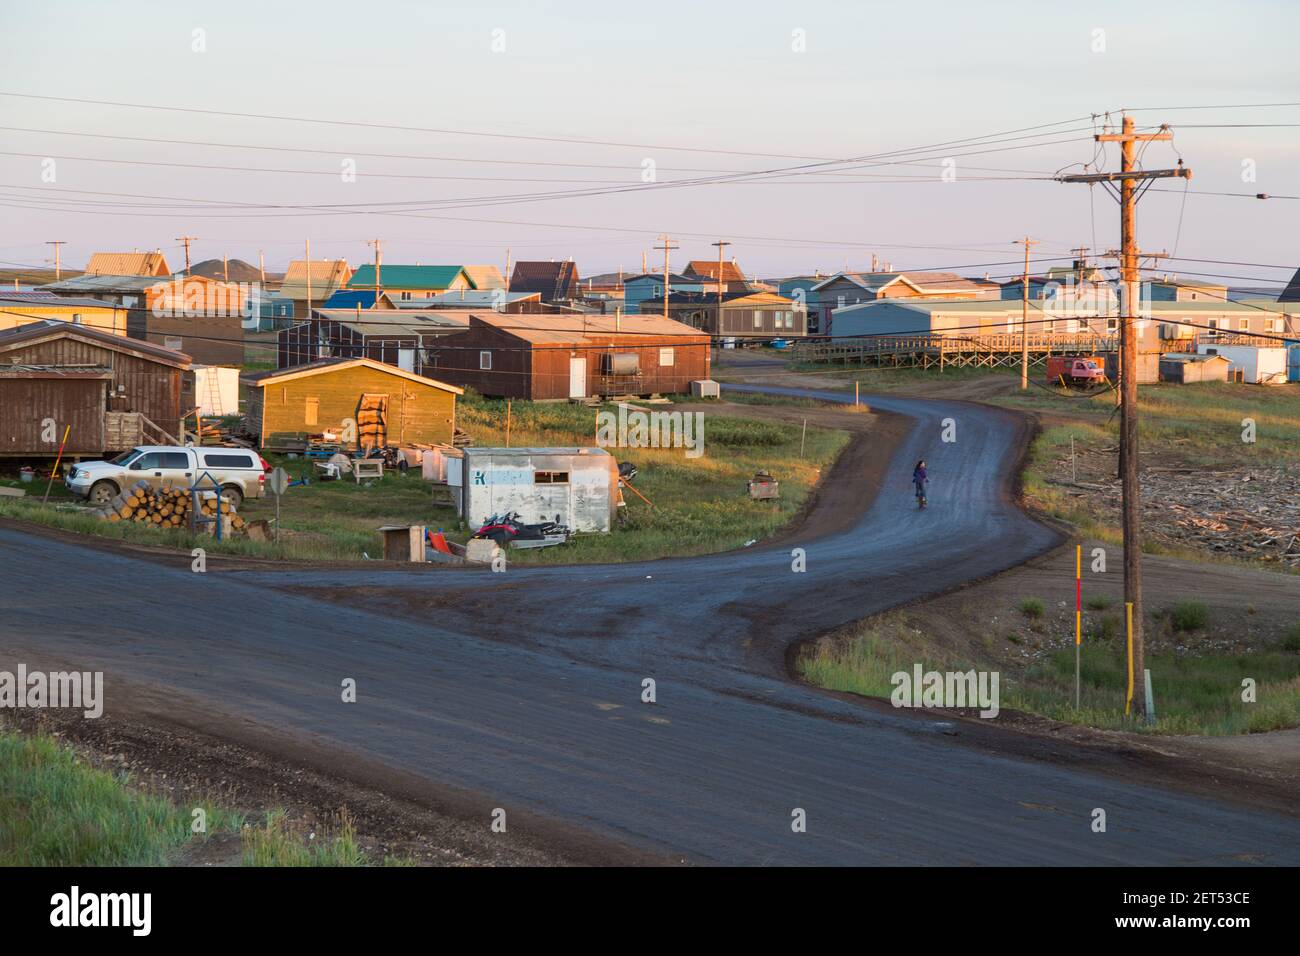 Soirée d'été sous le soleil de minuit dans le hameau inuvialuit de Tuktoyaktuk, dans les Territoires du Nord-Ouest, dans l'Arctique canadien. Banque D'Images